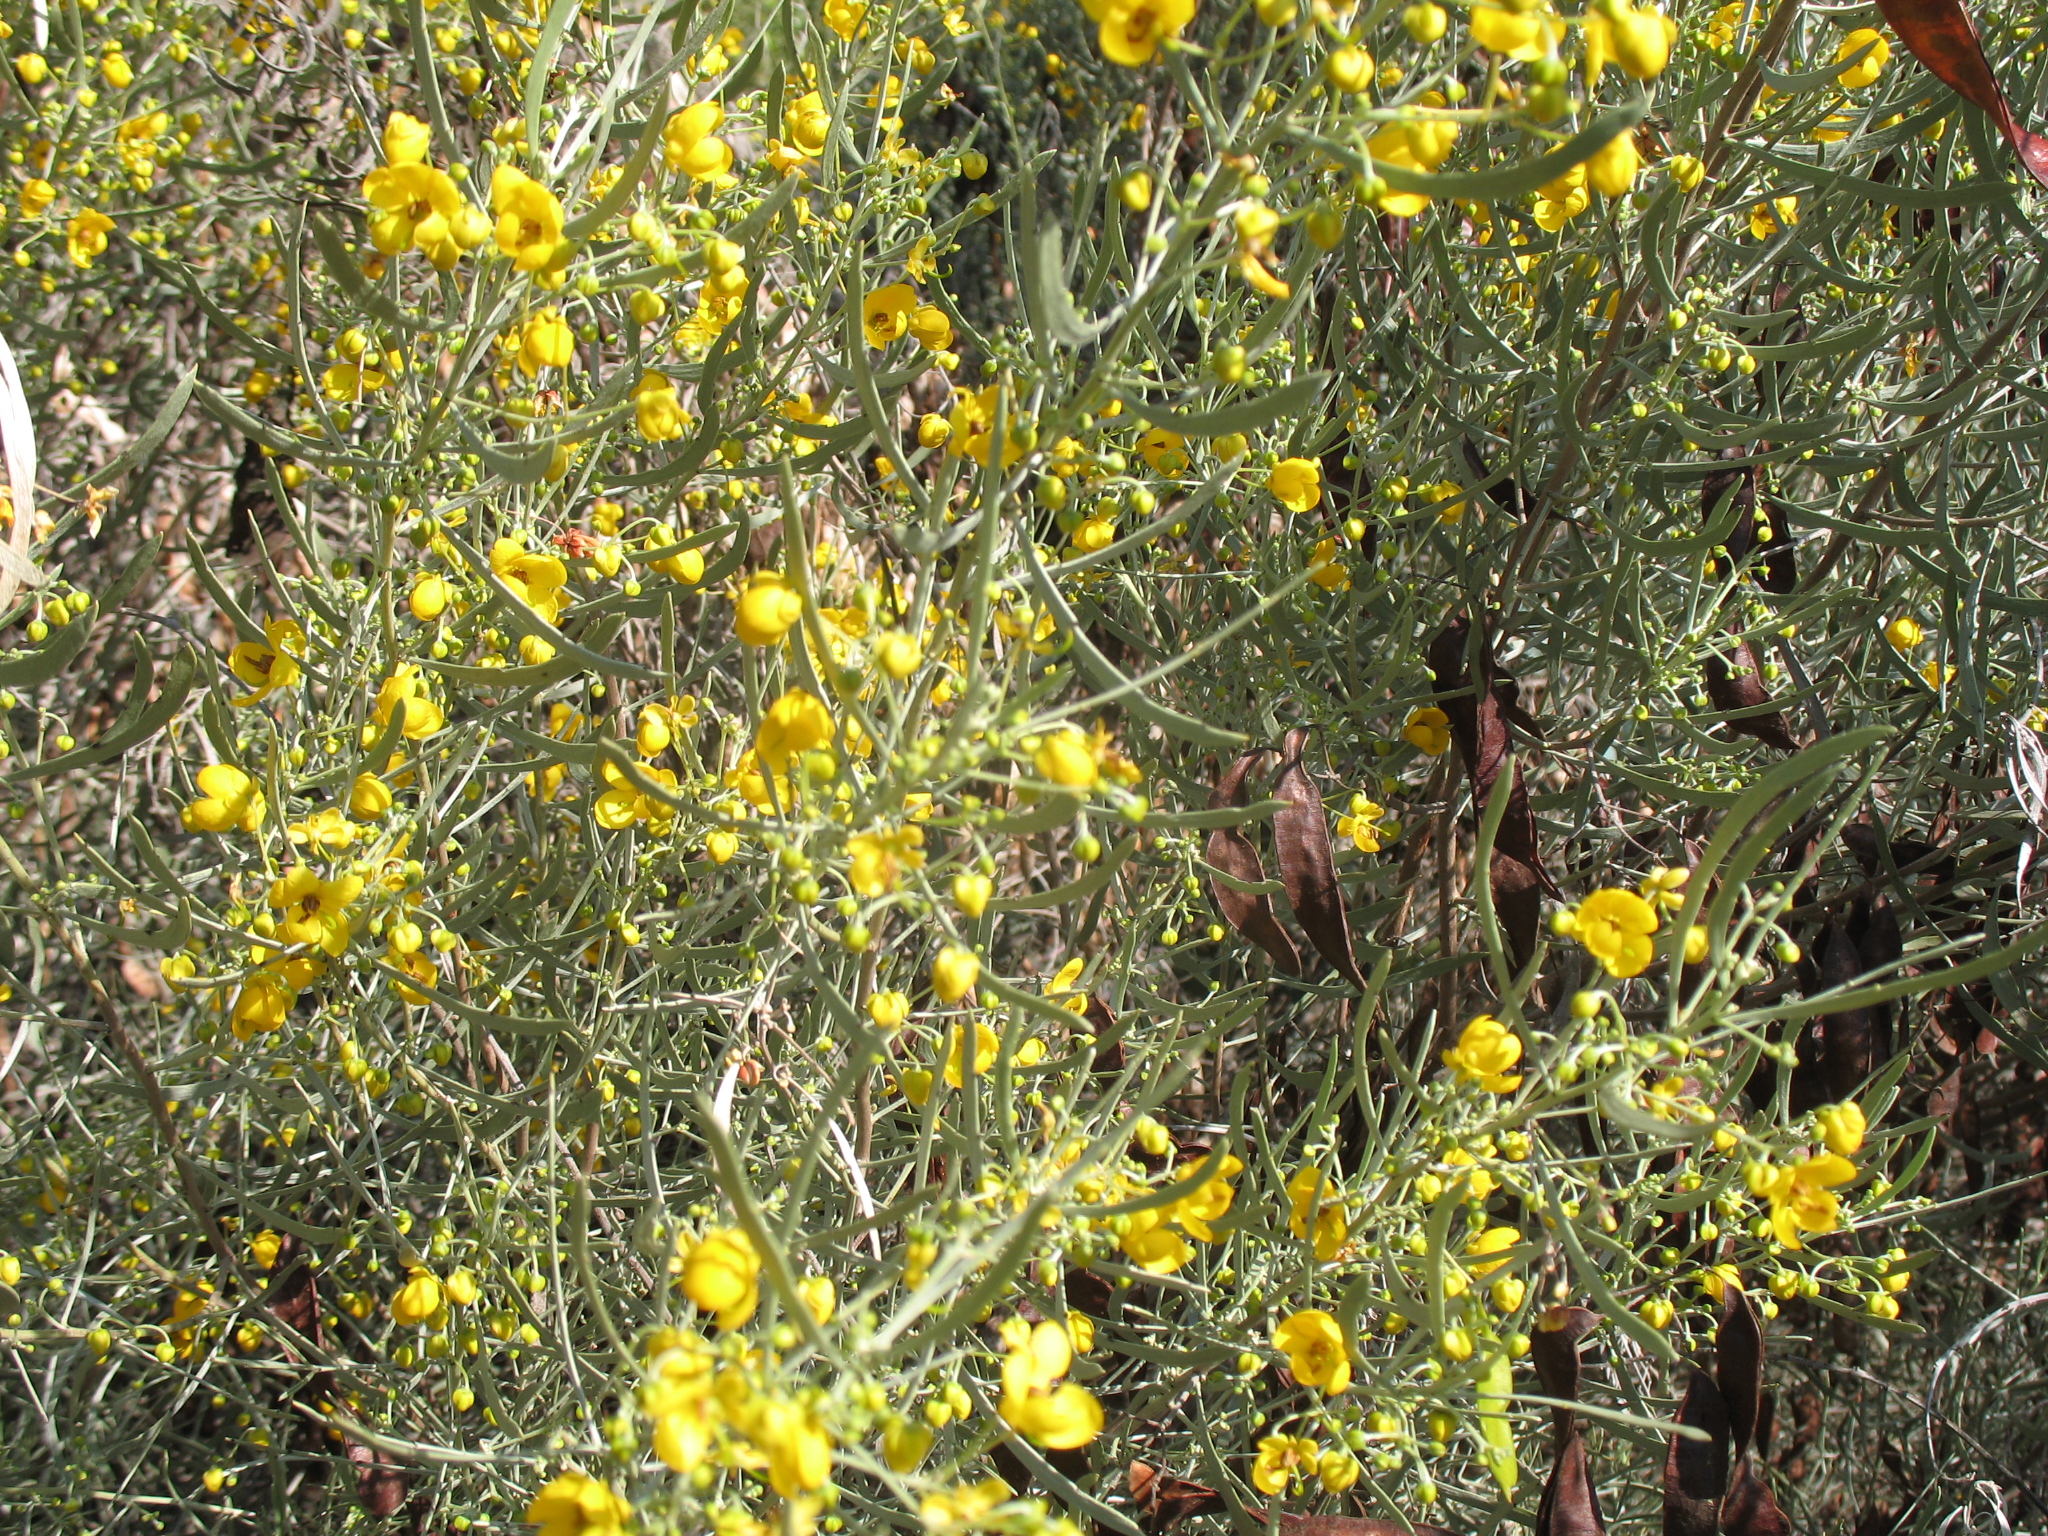 Senna artemisioides subsp. petiolaris / Silver Leaf Cassia, Woody Cassia